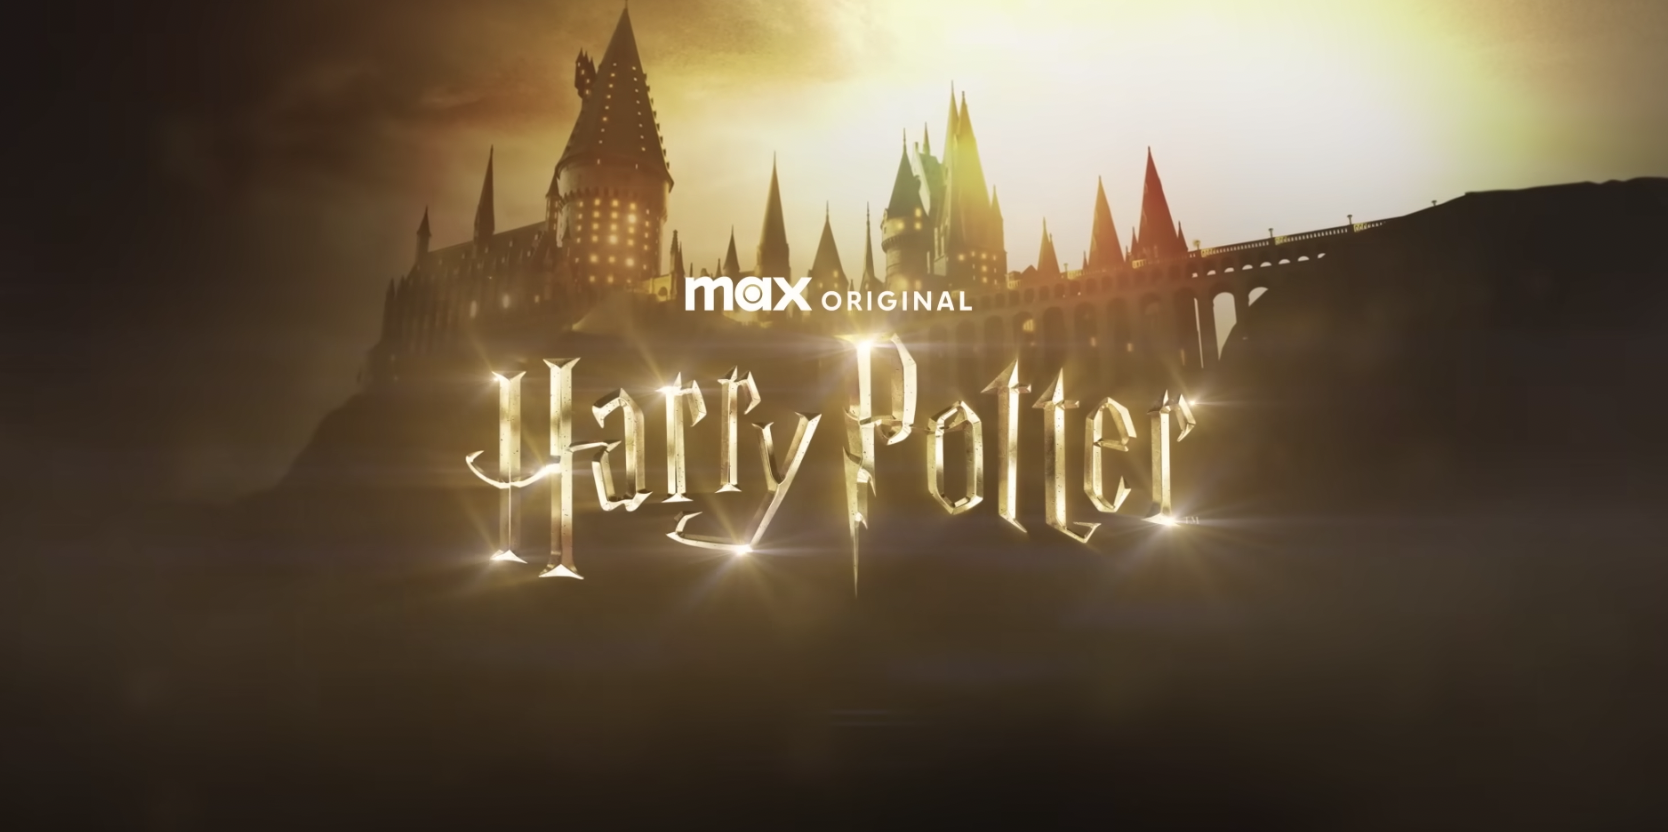 HBO снимает сериал о Гарри Поттере по книгам Роулинг, но с новыми актерами: вышел первый тизер